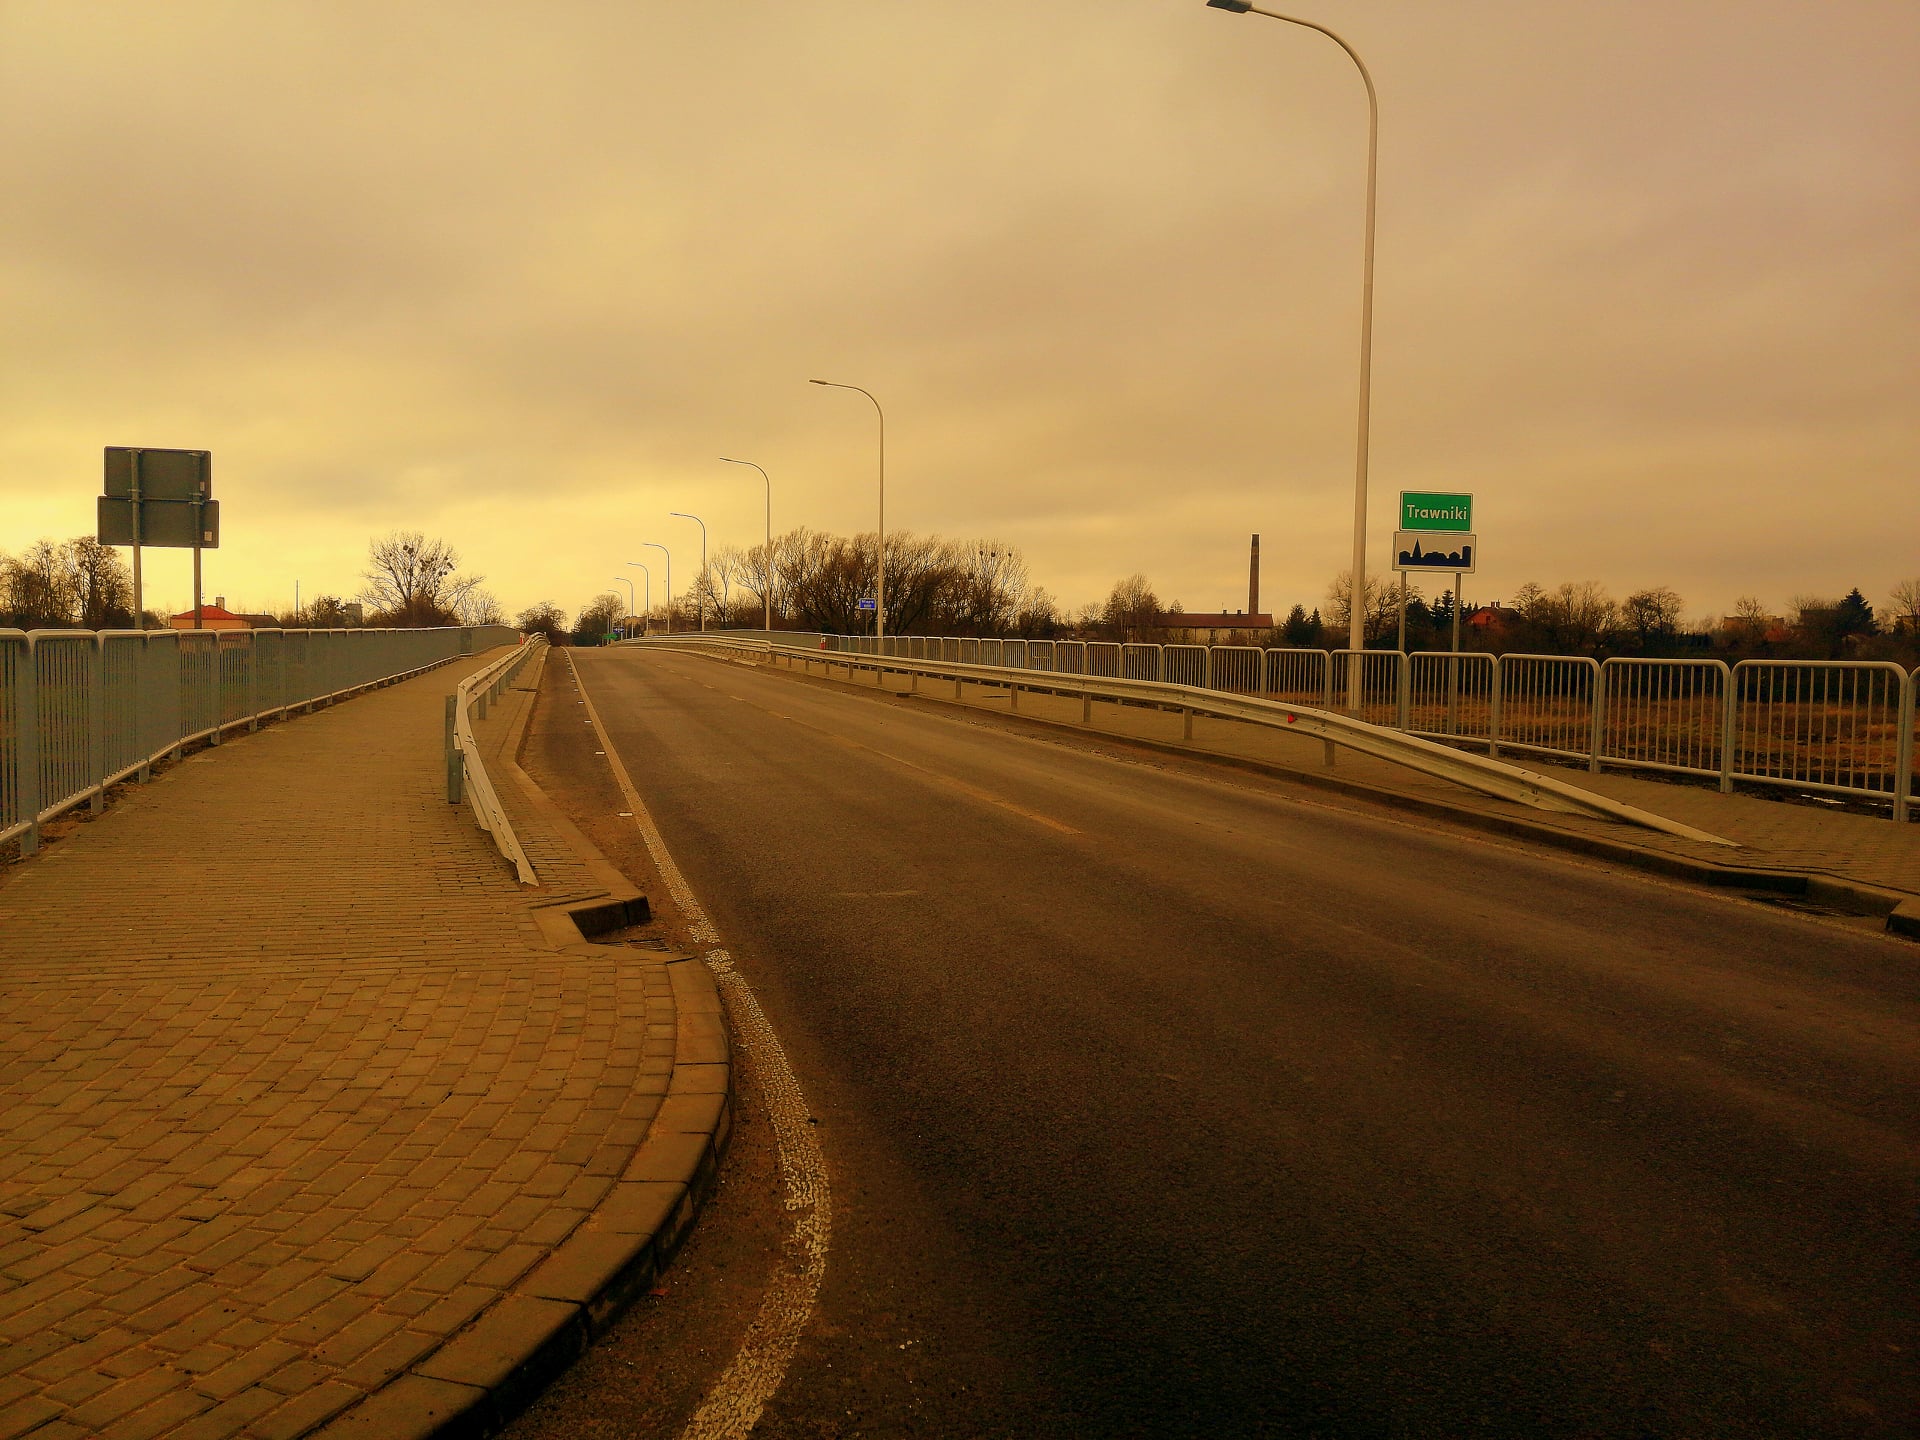 Zdjęcie przedstawia most w Trawnikach wraz z drogą wojewódzką.